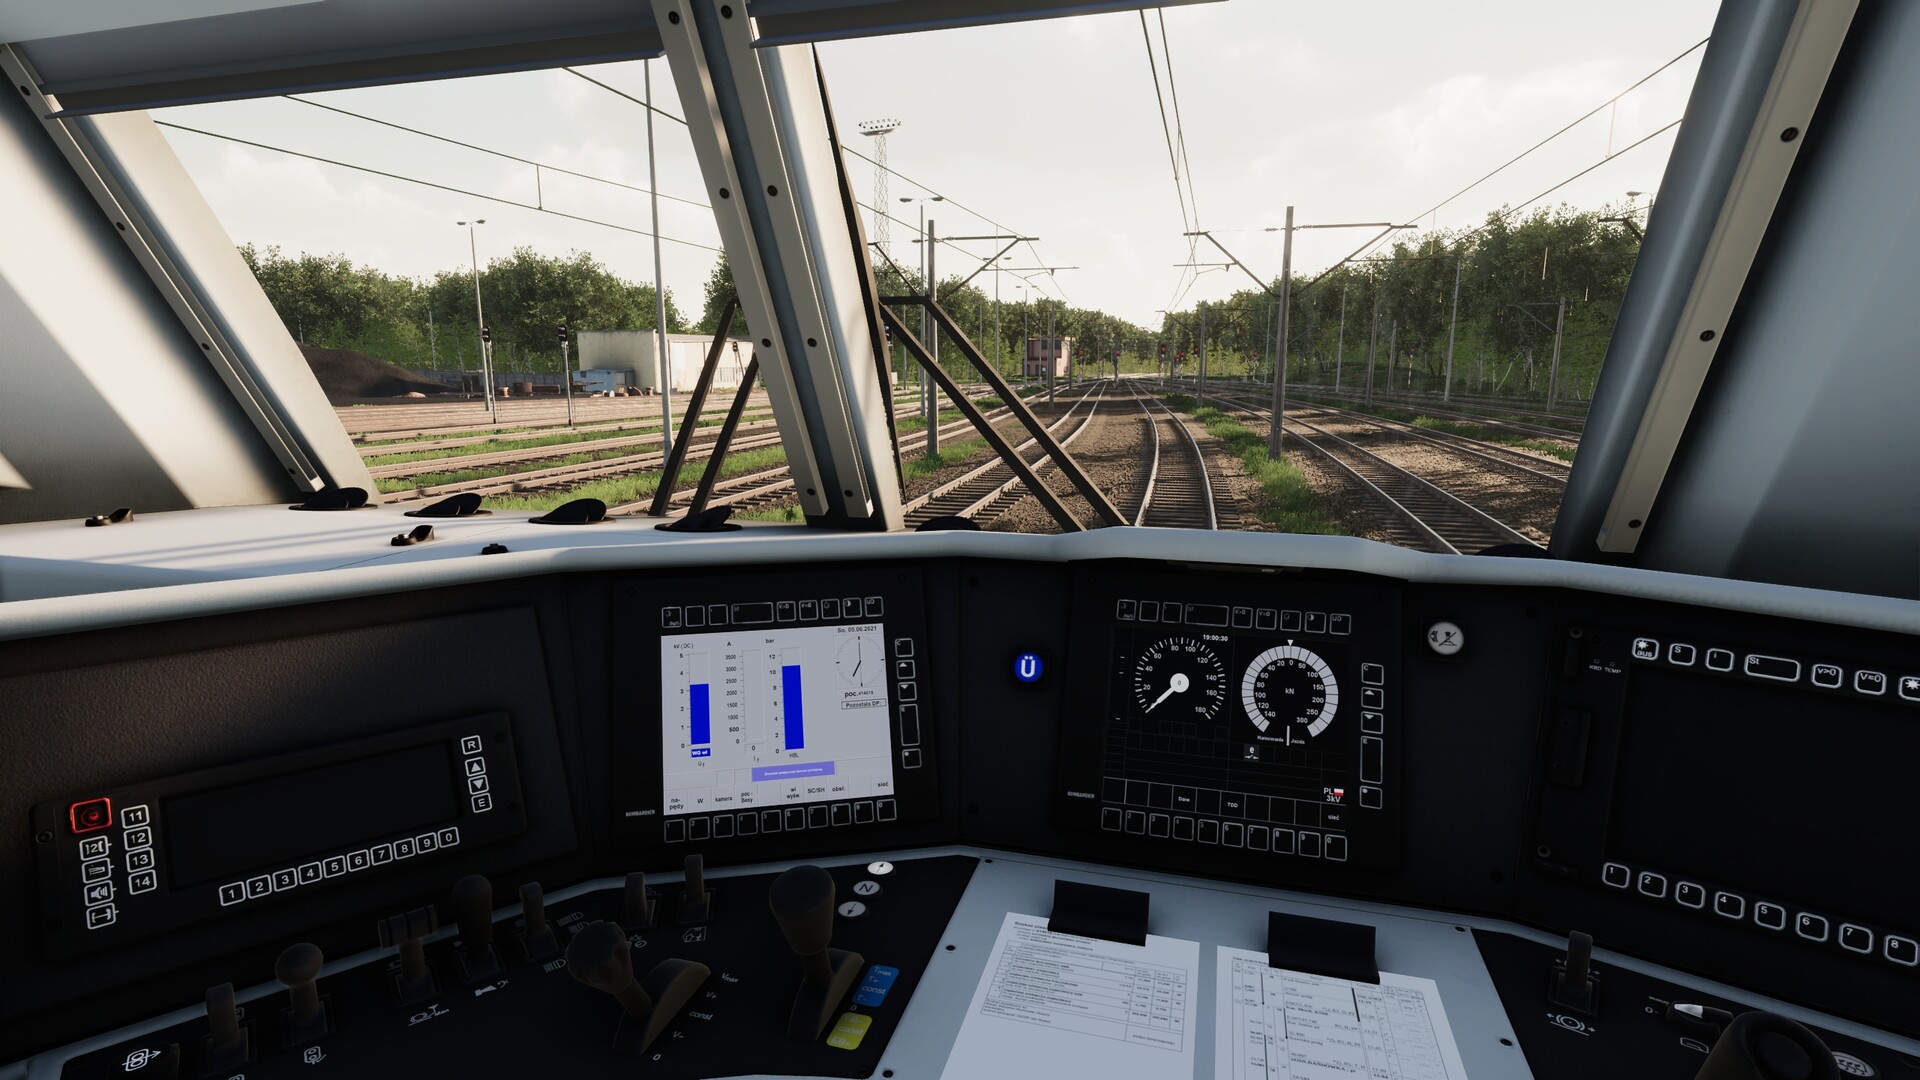 Download SimRail The Railway Simulator